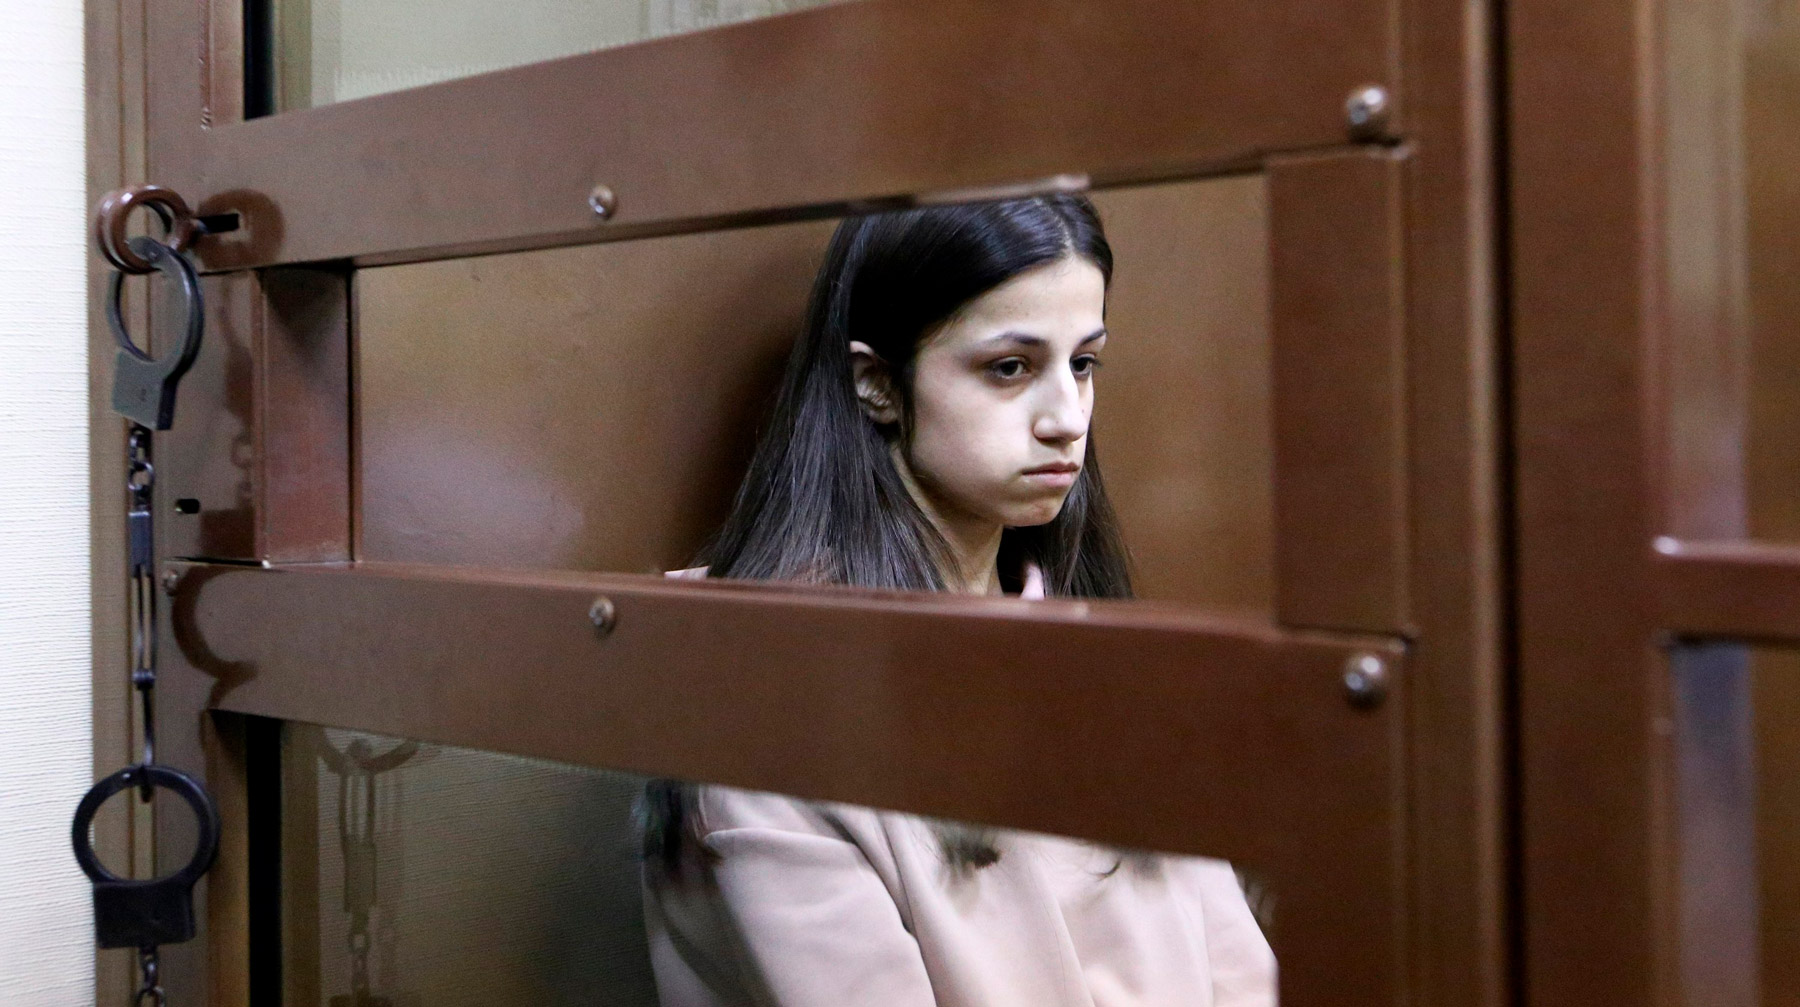 Сестер Хачатурян, убивших отца, отправили в СИЗО почти на два месяца Фото: © Агентство Москва/Никеричев Андрей